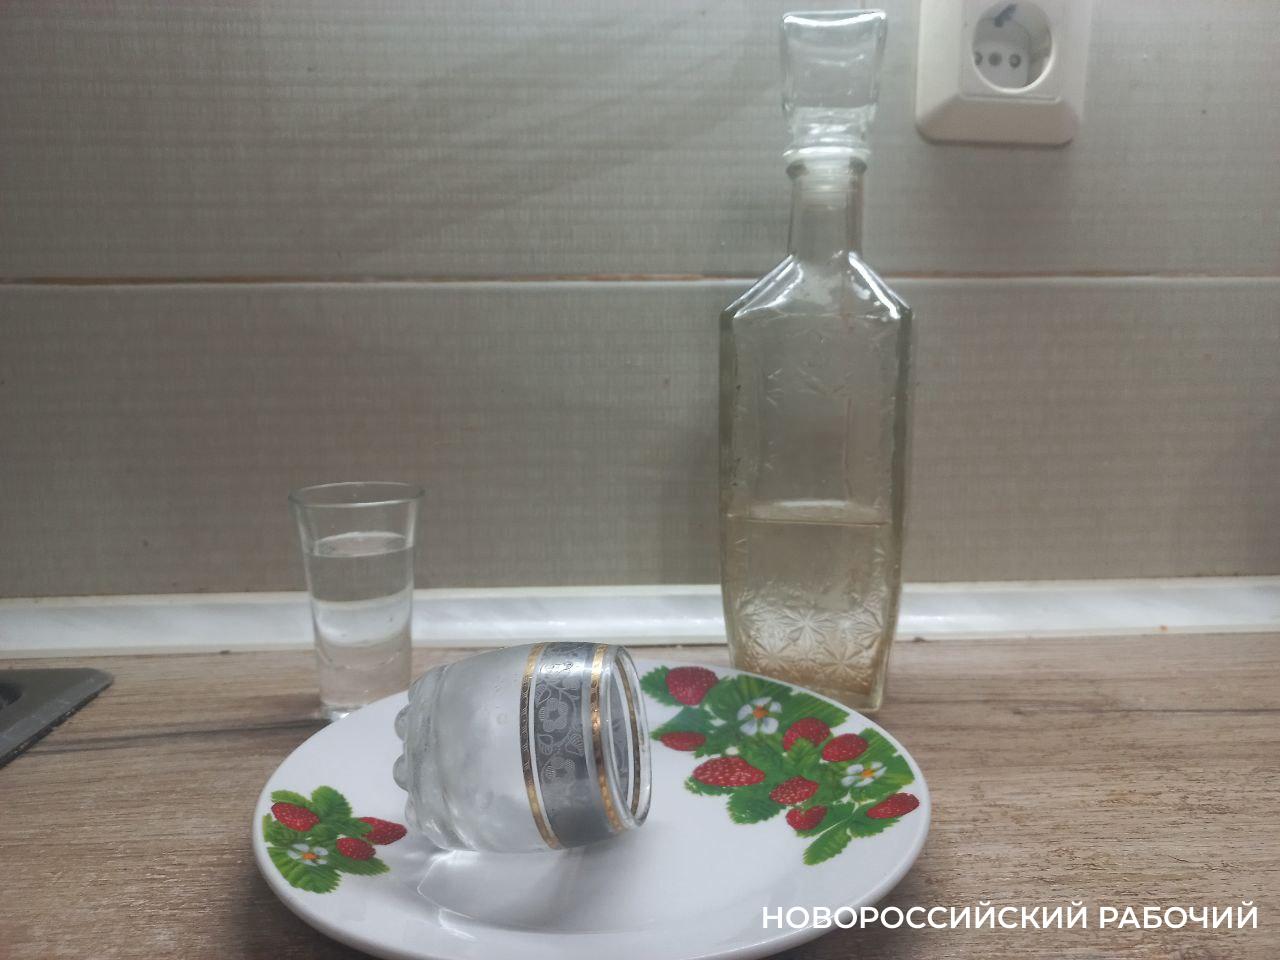 В Новороссийске осудили мужчину, который убил собутыльника осколком тарелки